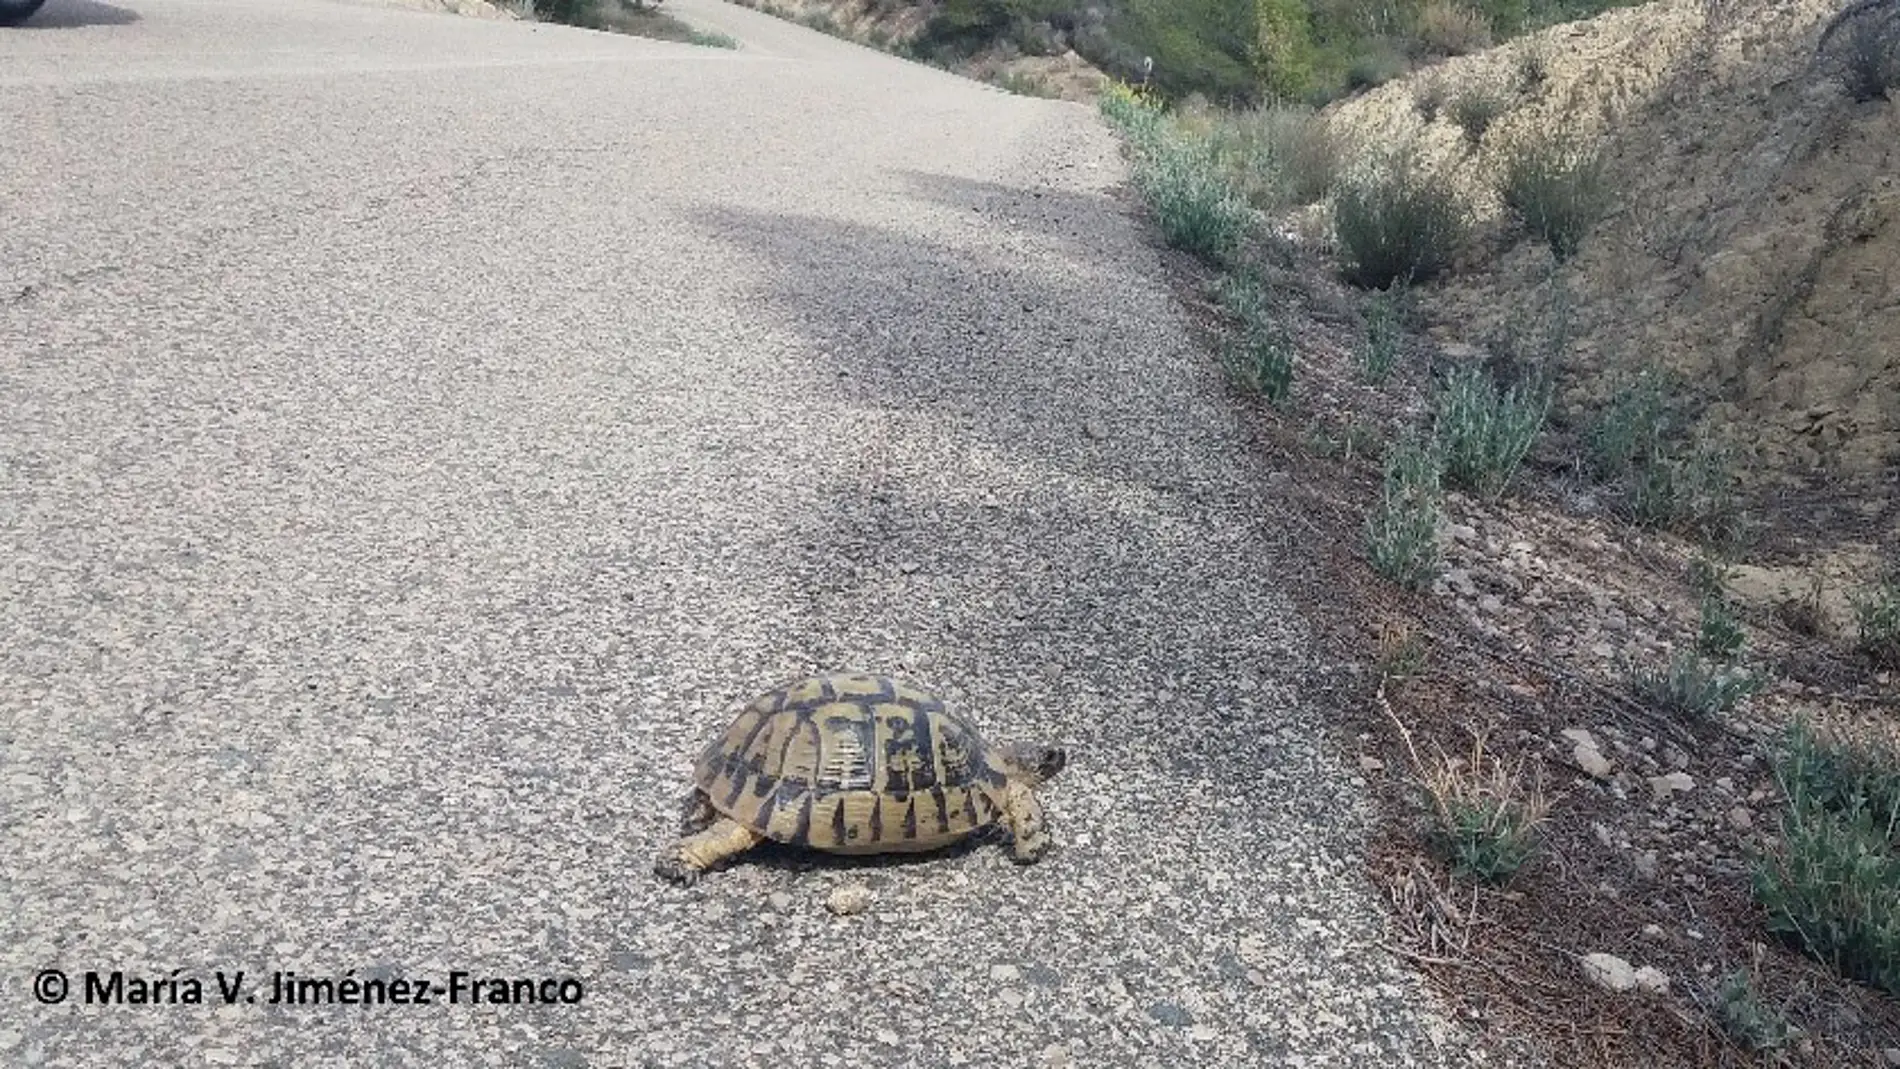 Ejempalr de tortuga mora atravesando una carretera en el sureste ibérico. 